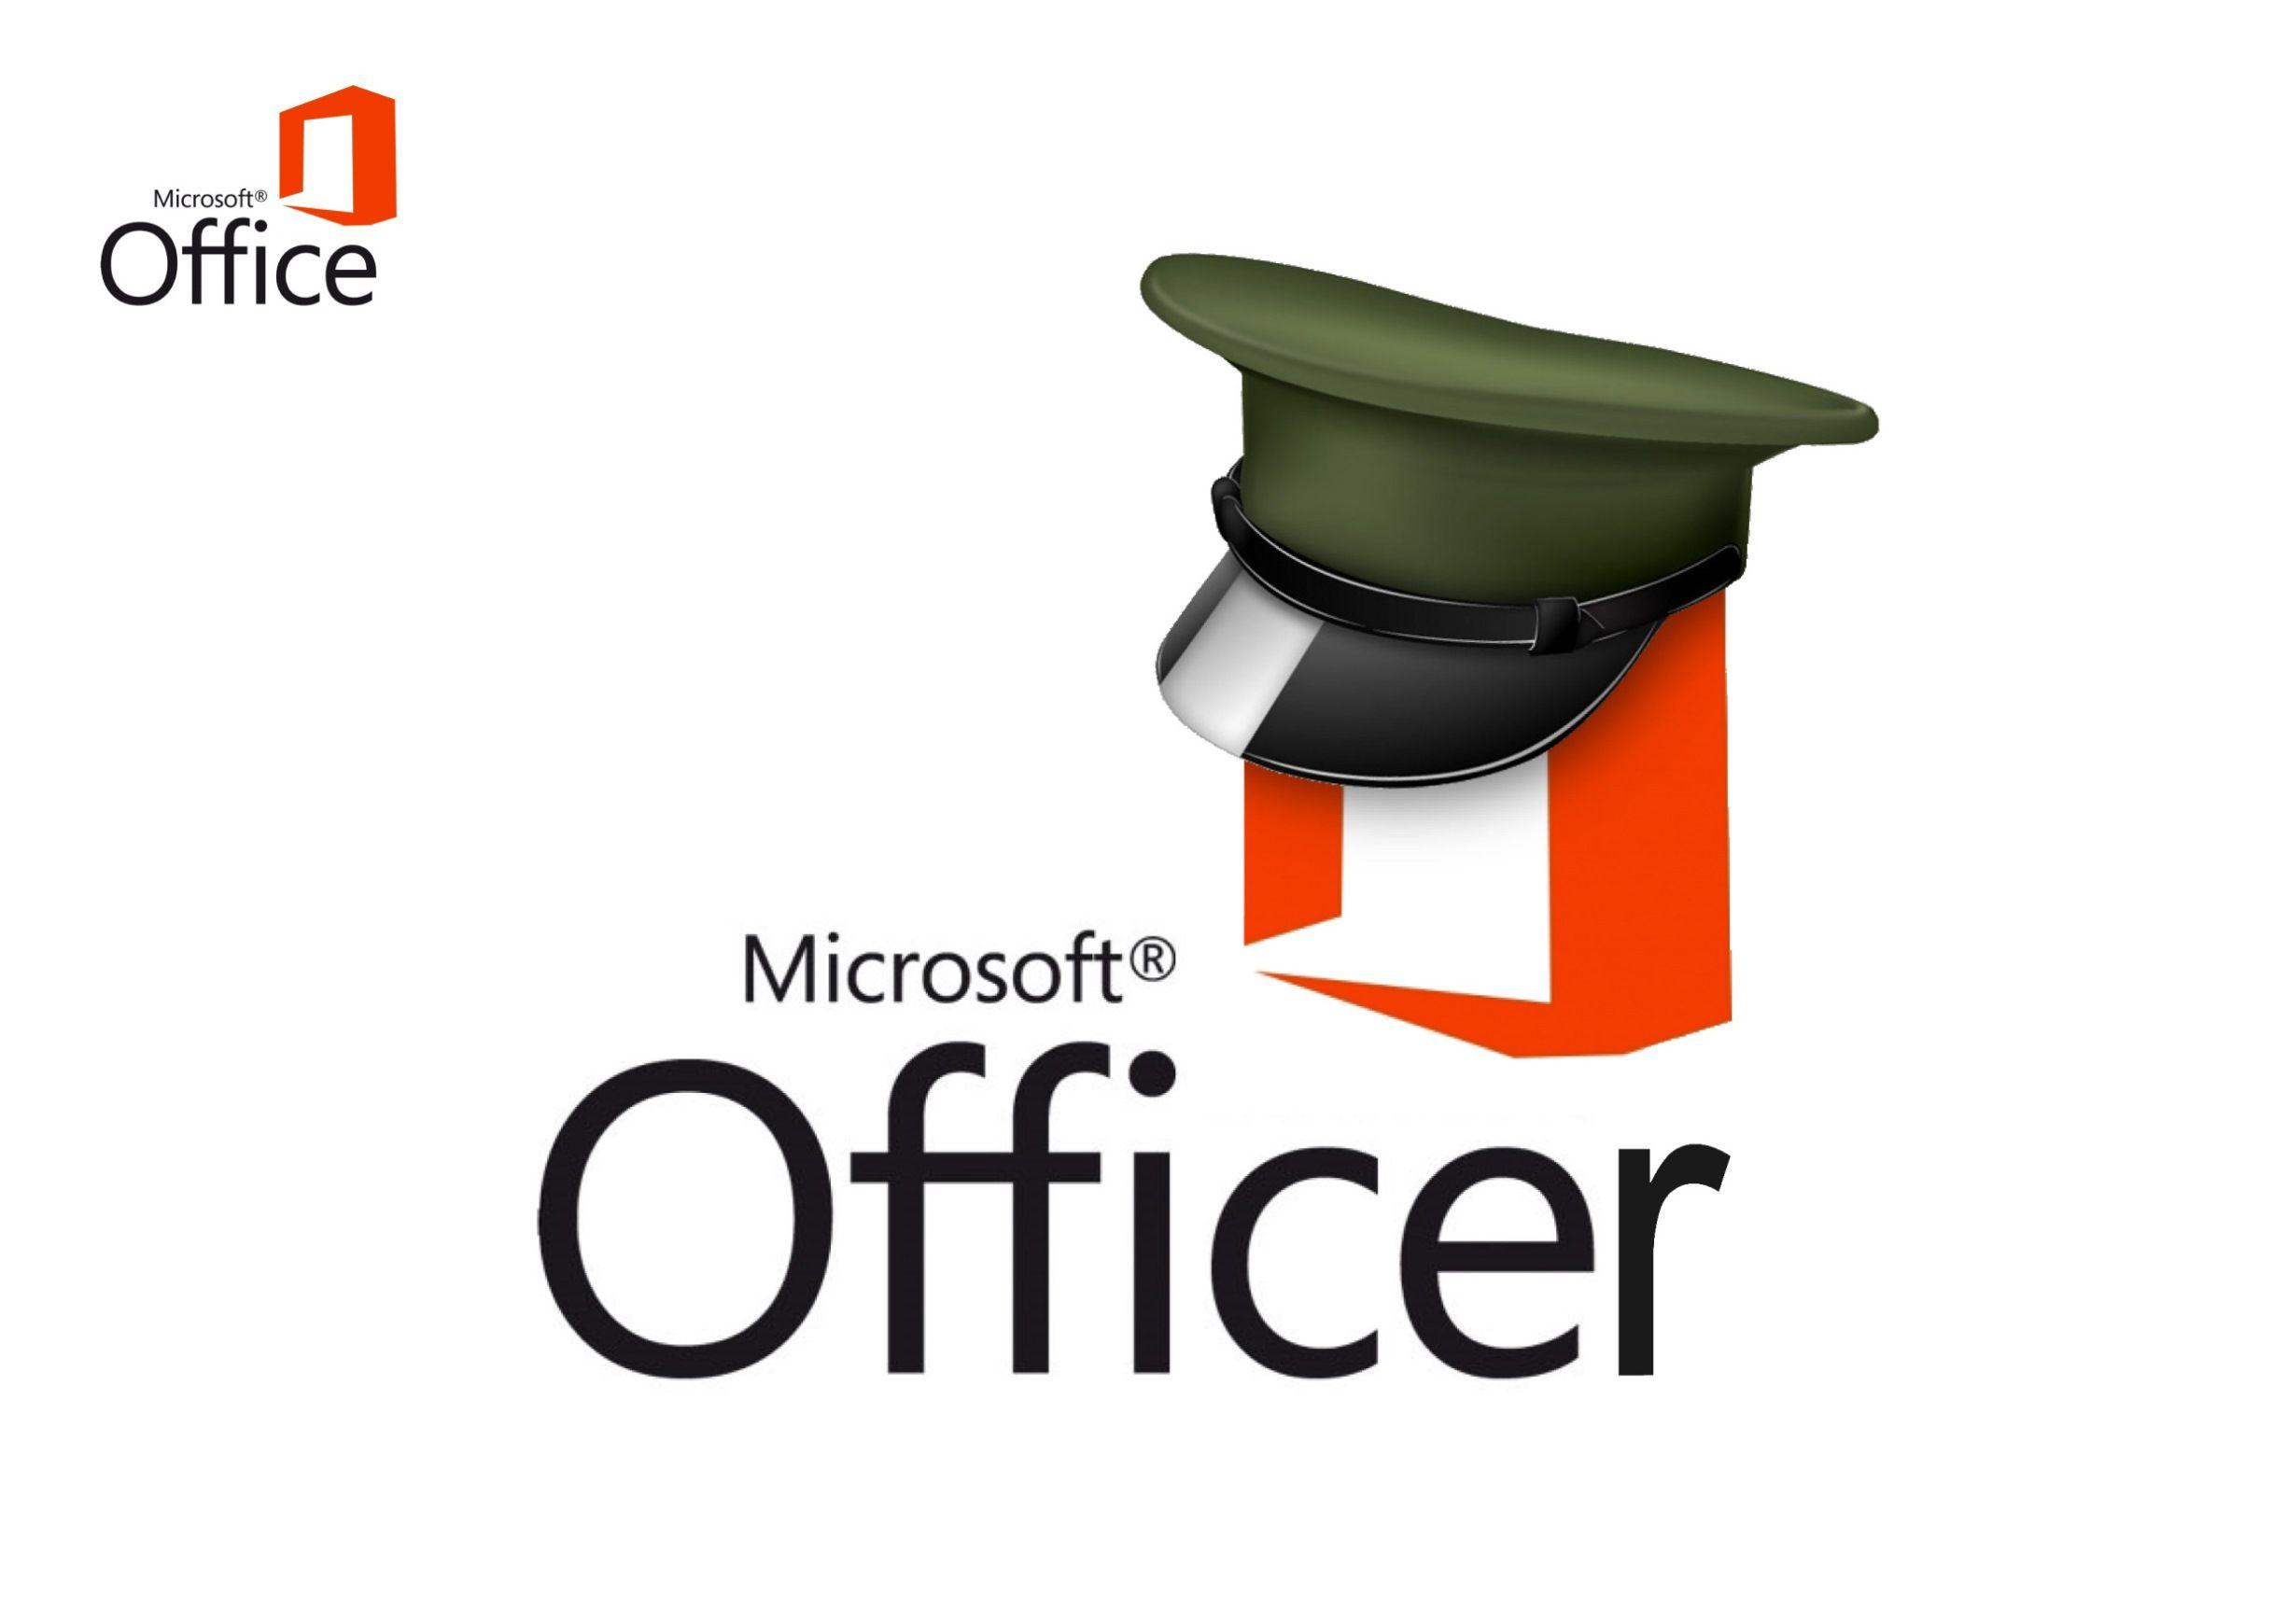 Microsoft Office 2013 Logo - microsoft office logos - Zlatan.fontanacountryinn.com